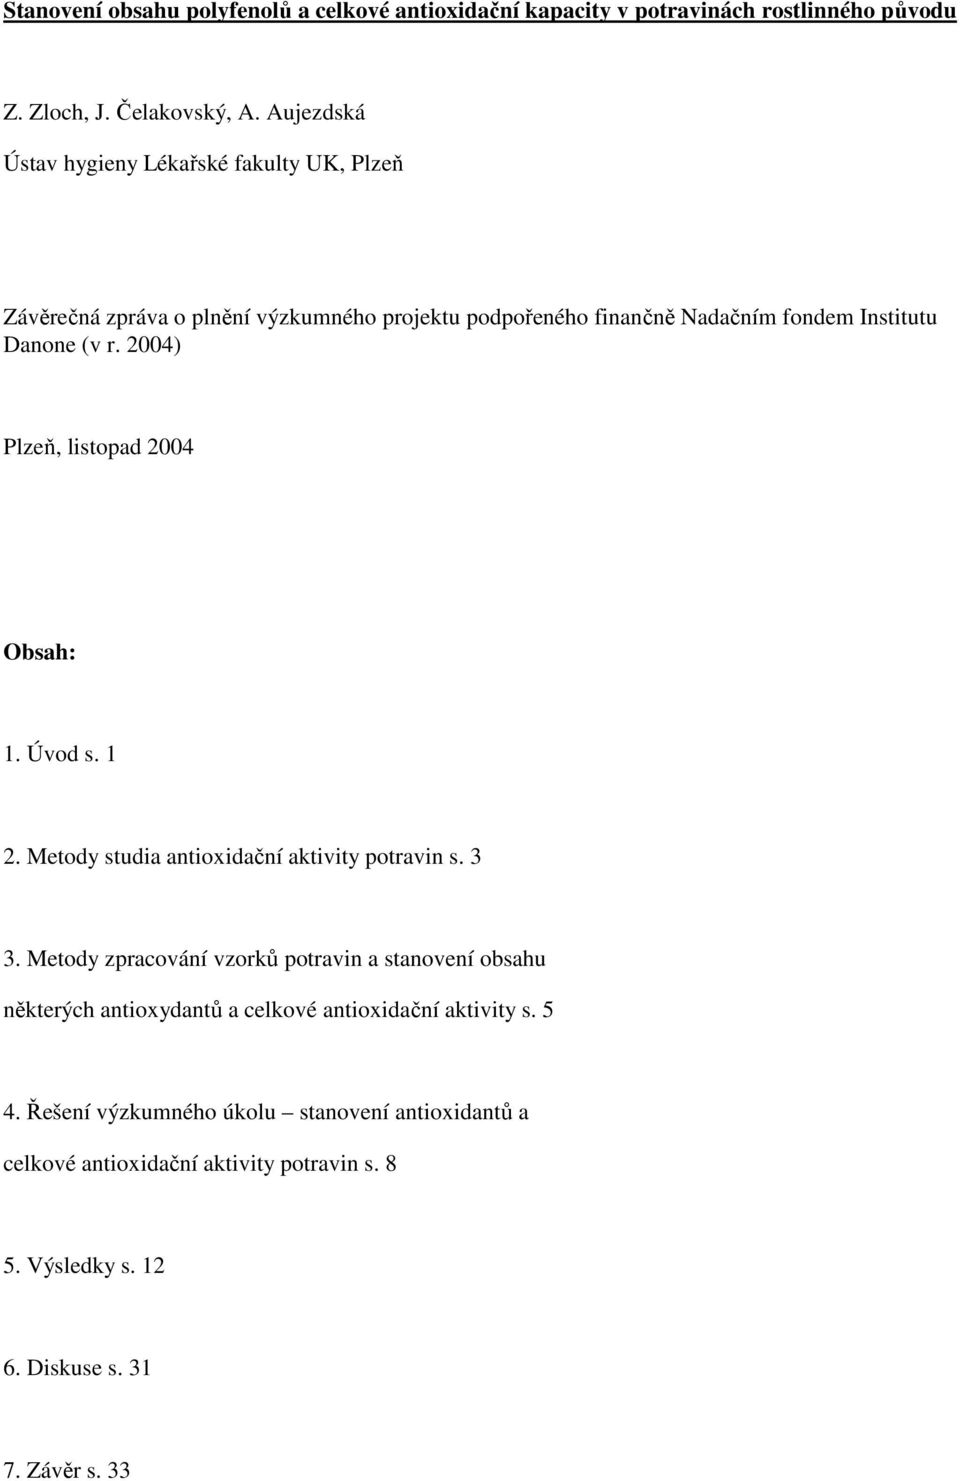 2004) Plzeň, listopad 2004 Obsah: 1. Úvod s. 1 2. Metody studia antioxidační aktivity potravin s. 3 3.